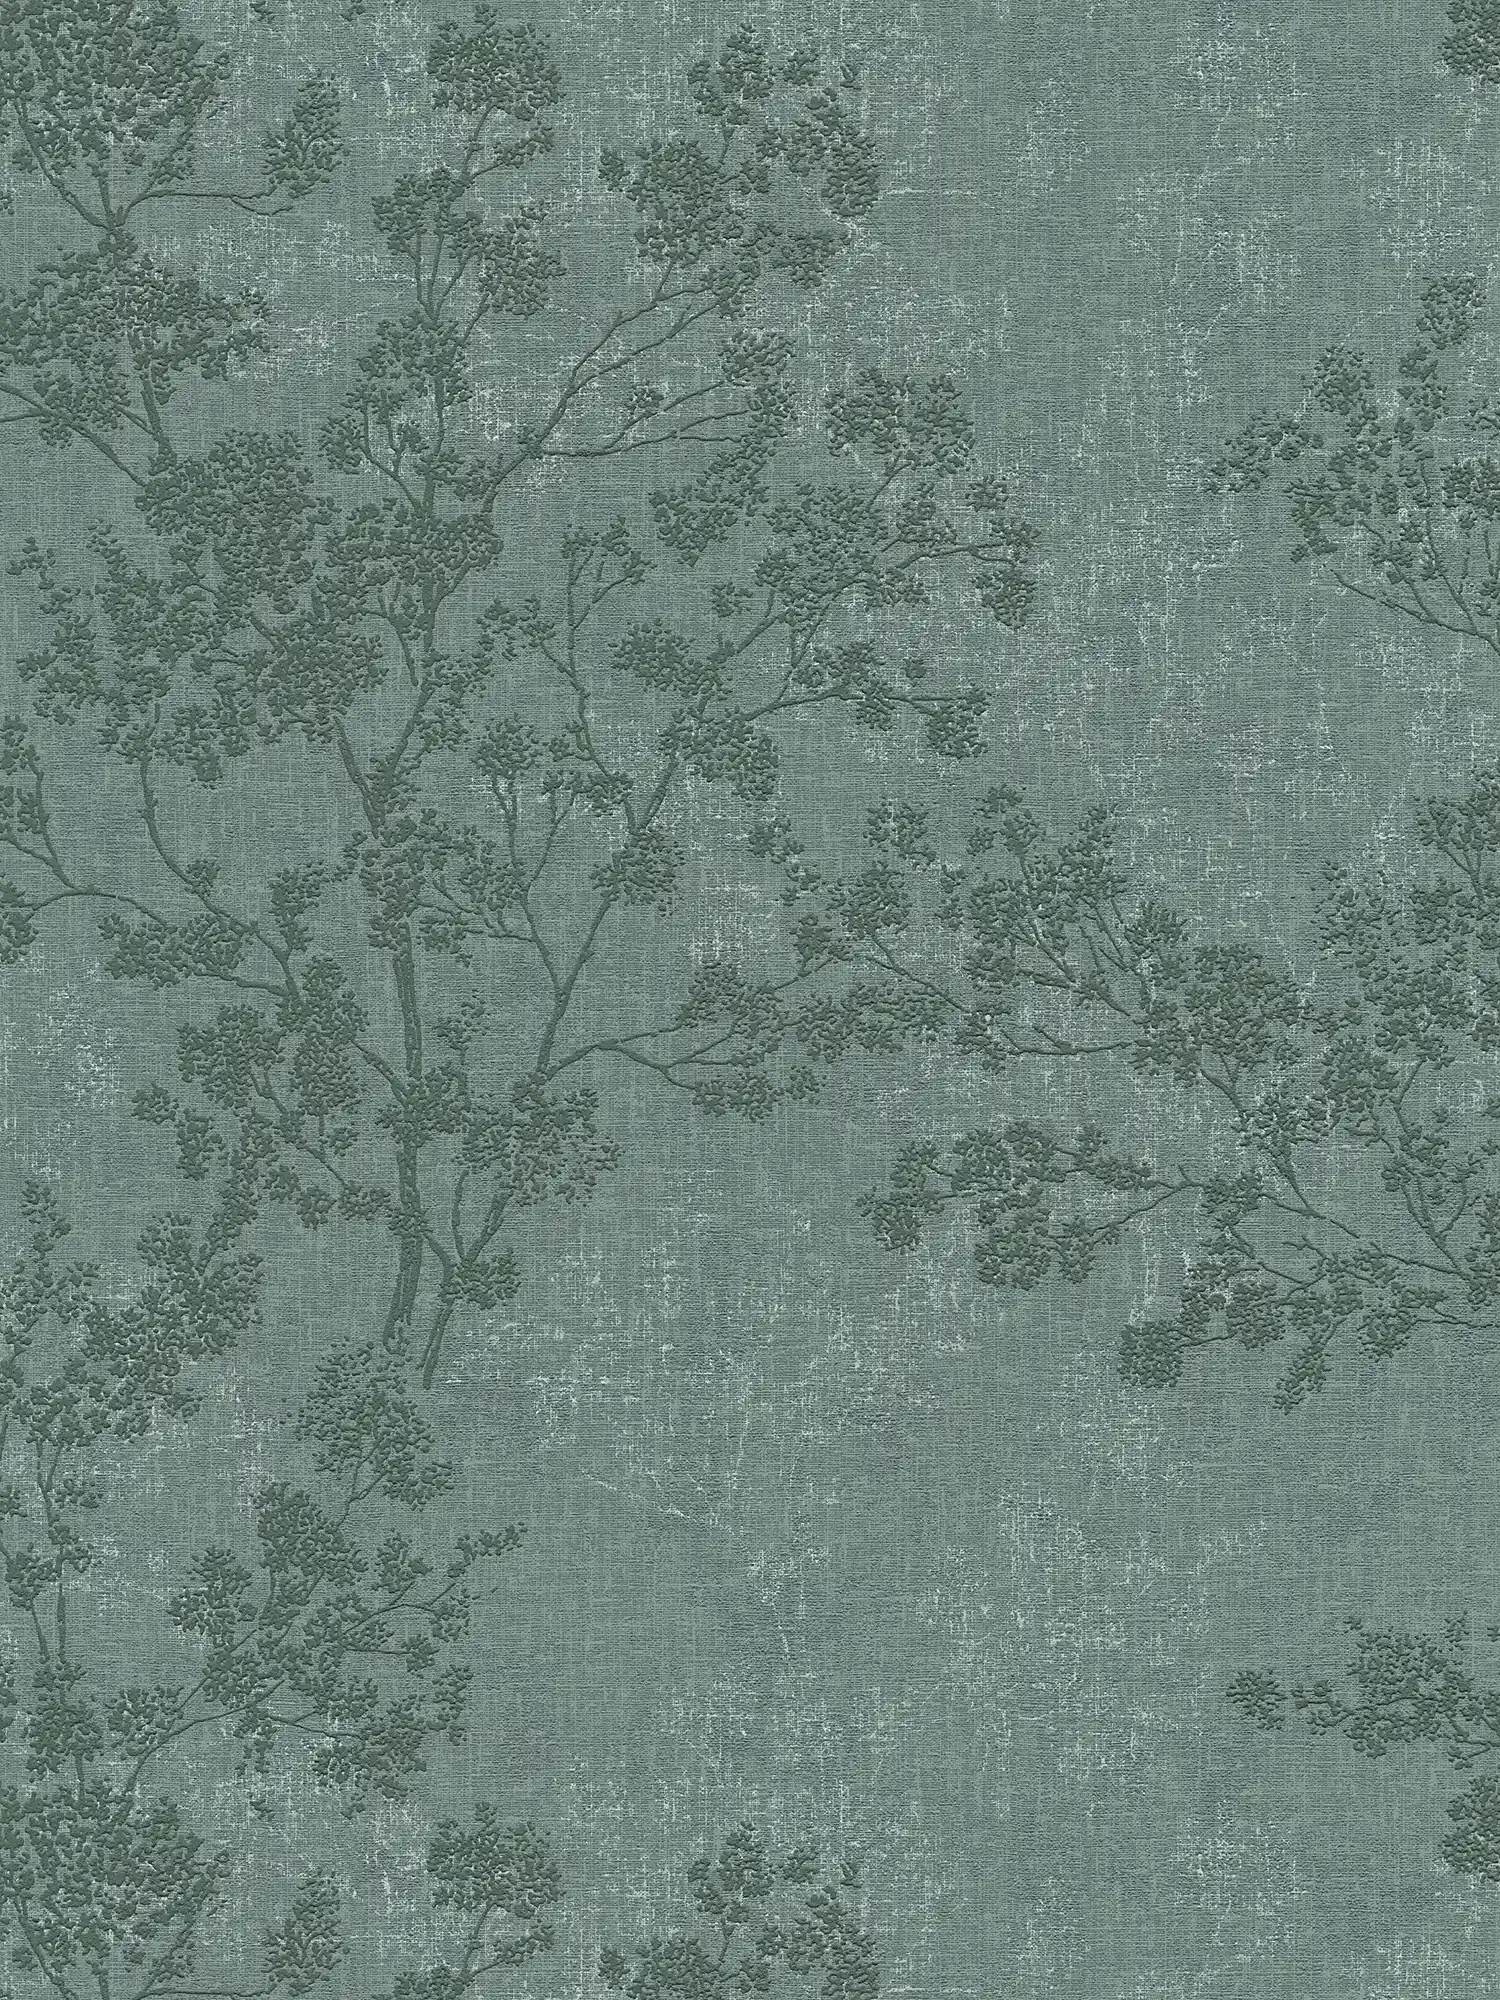 wallpaper leaves pattern in linen look - green
